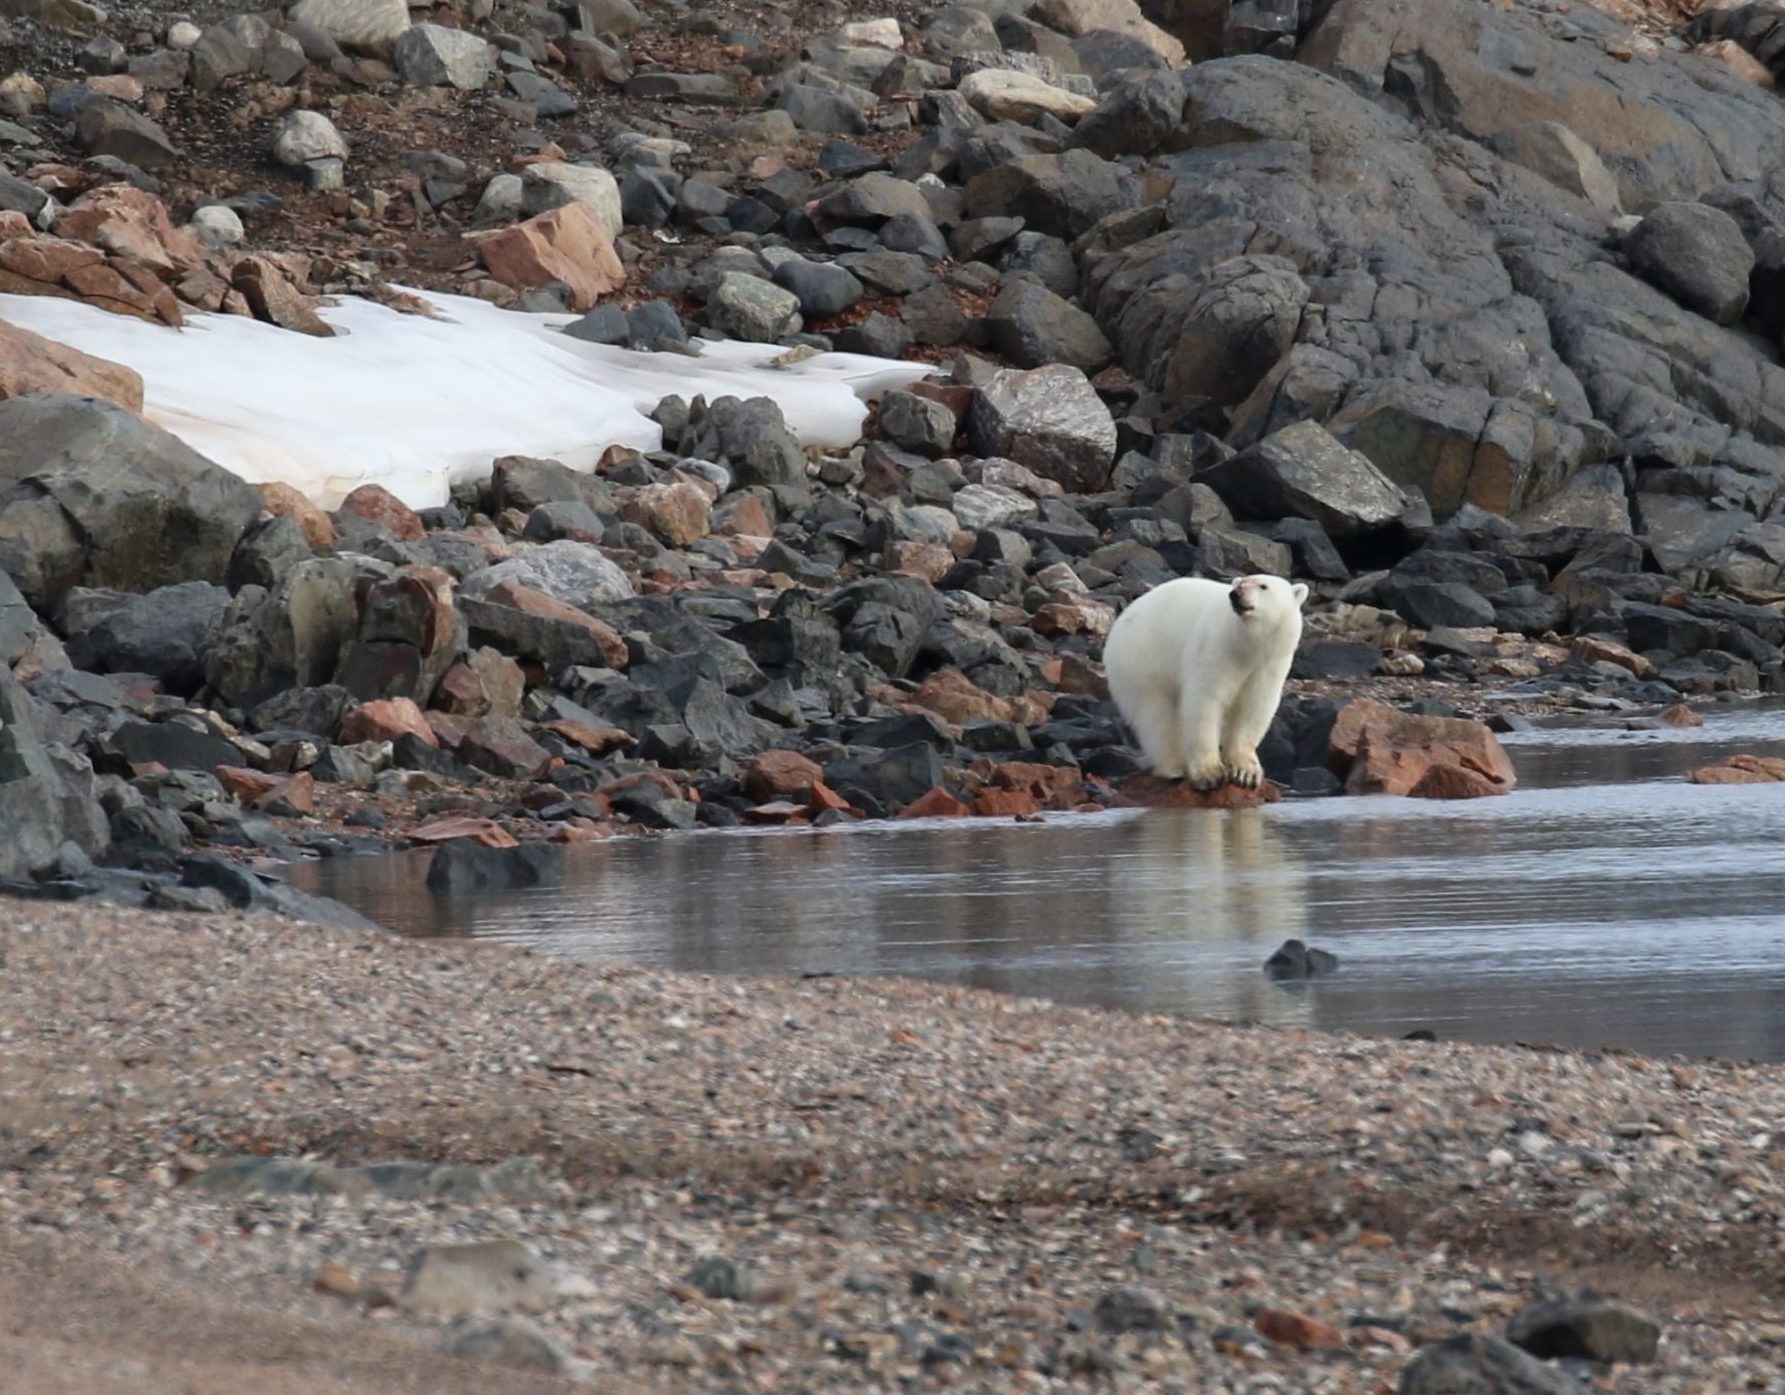  Polar bear on a rocky shore